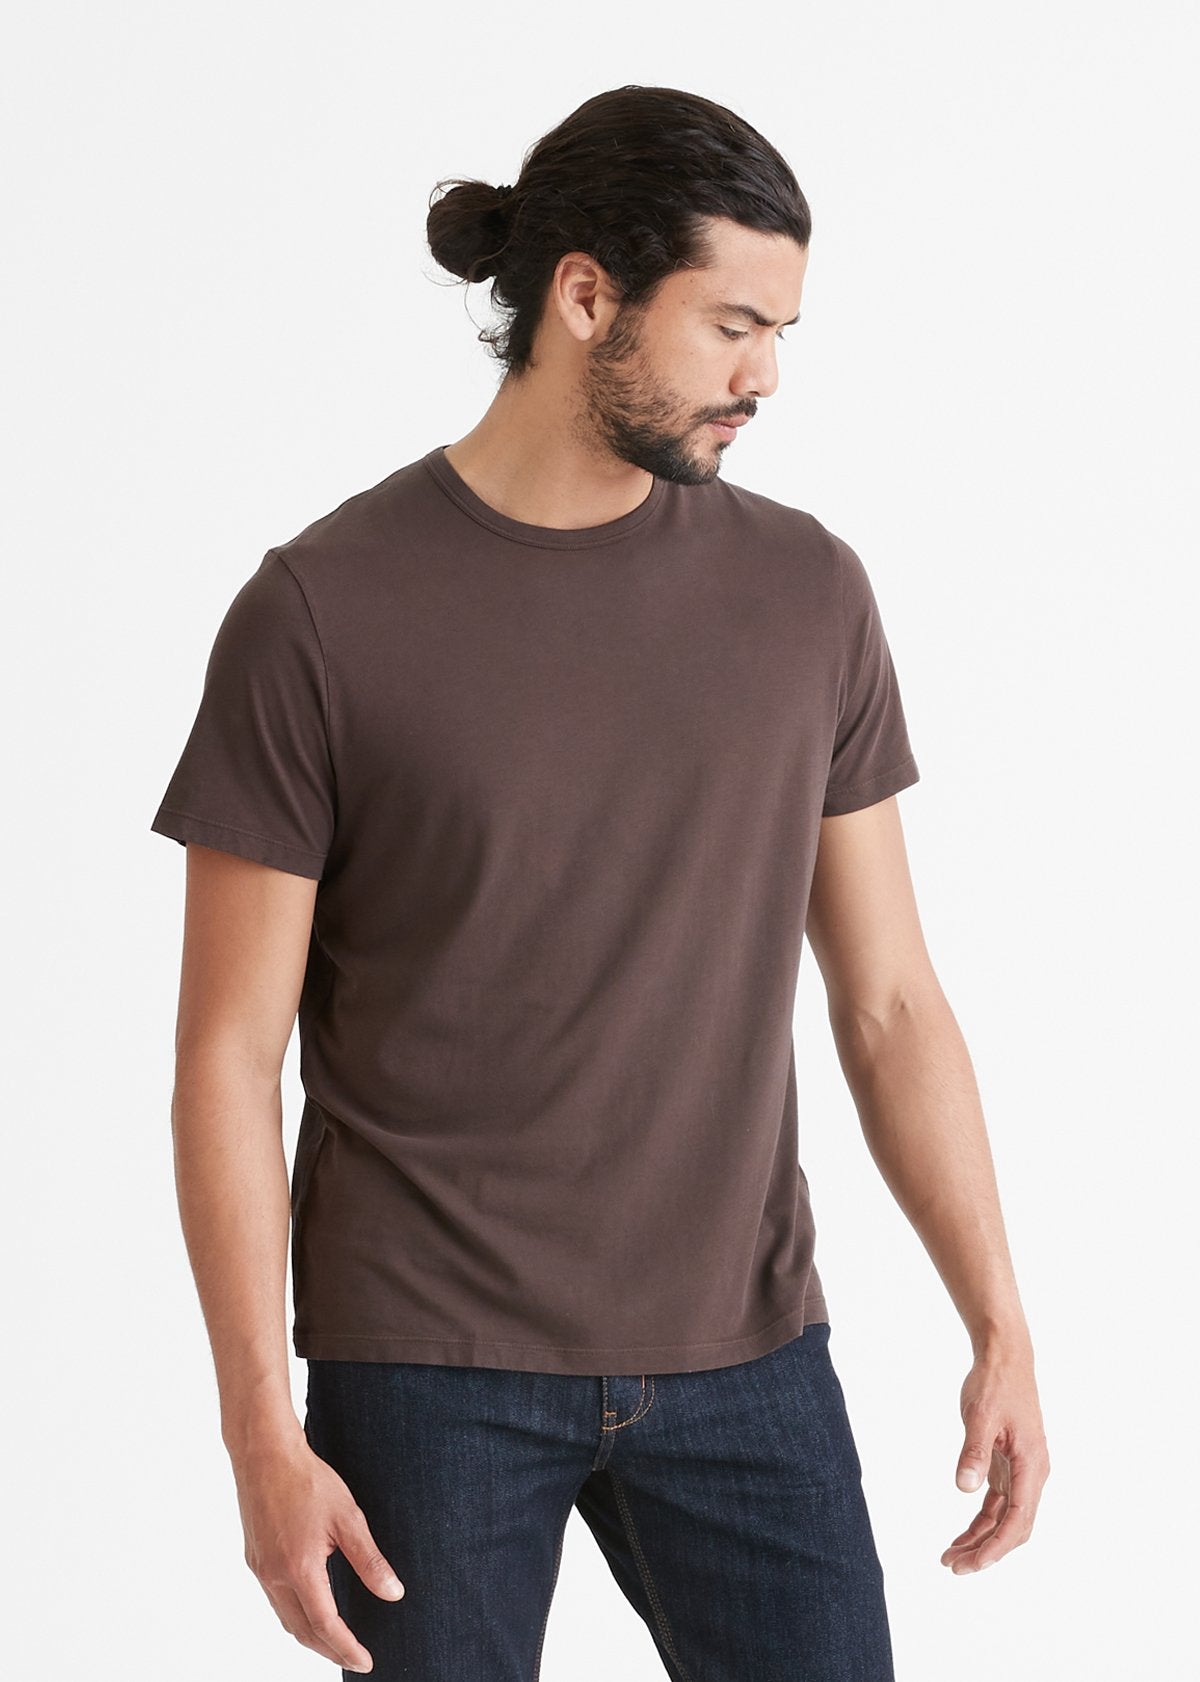 mens seal soft lightweight t-shirt front